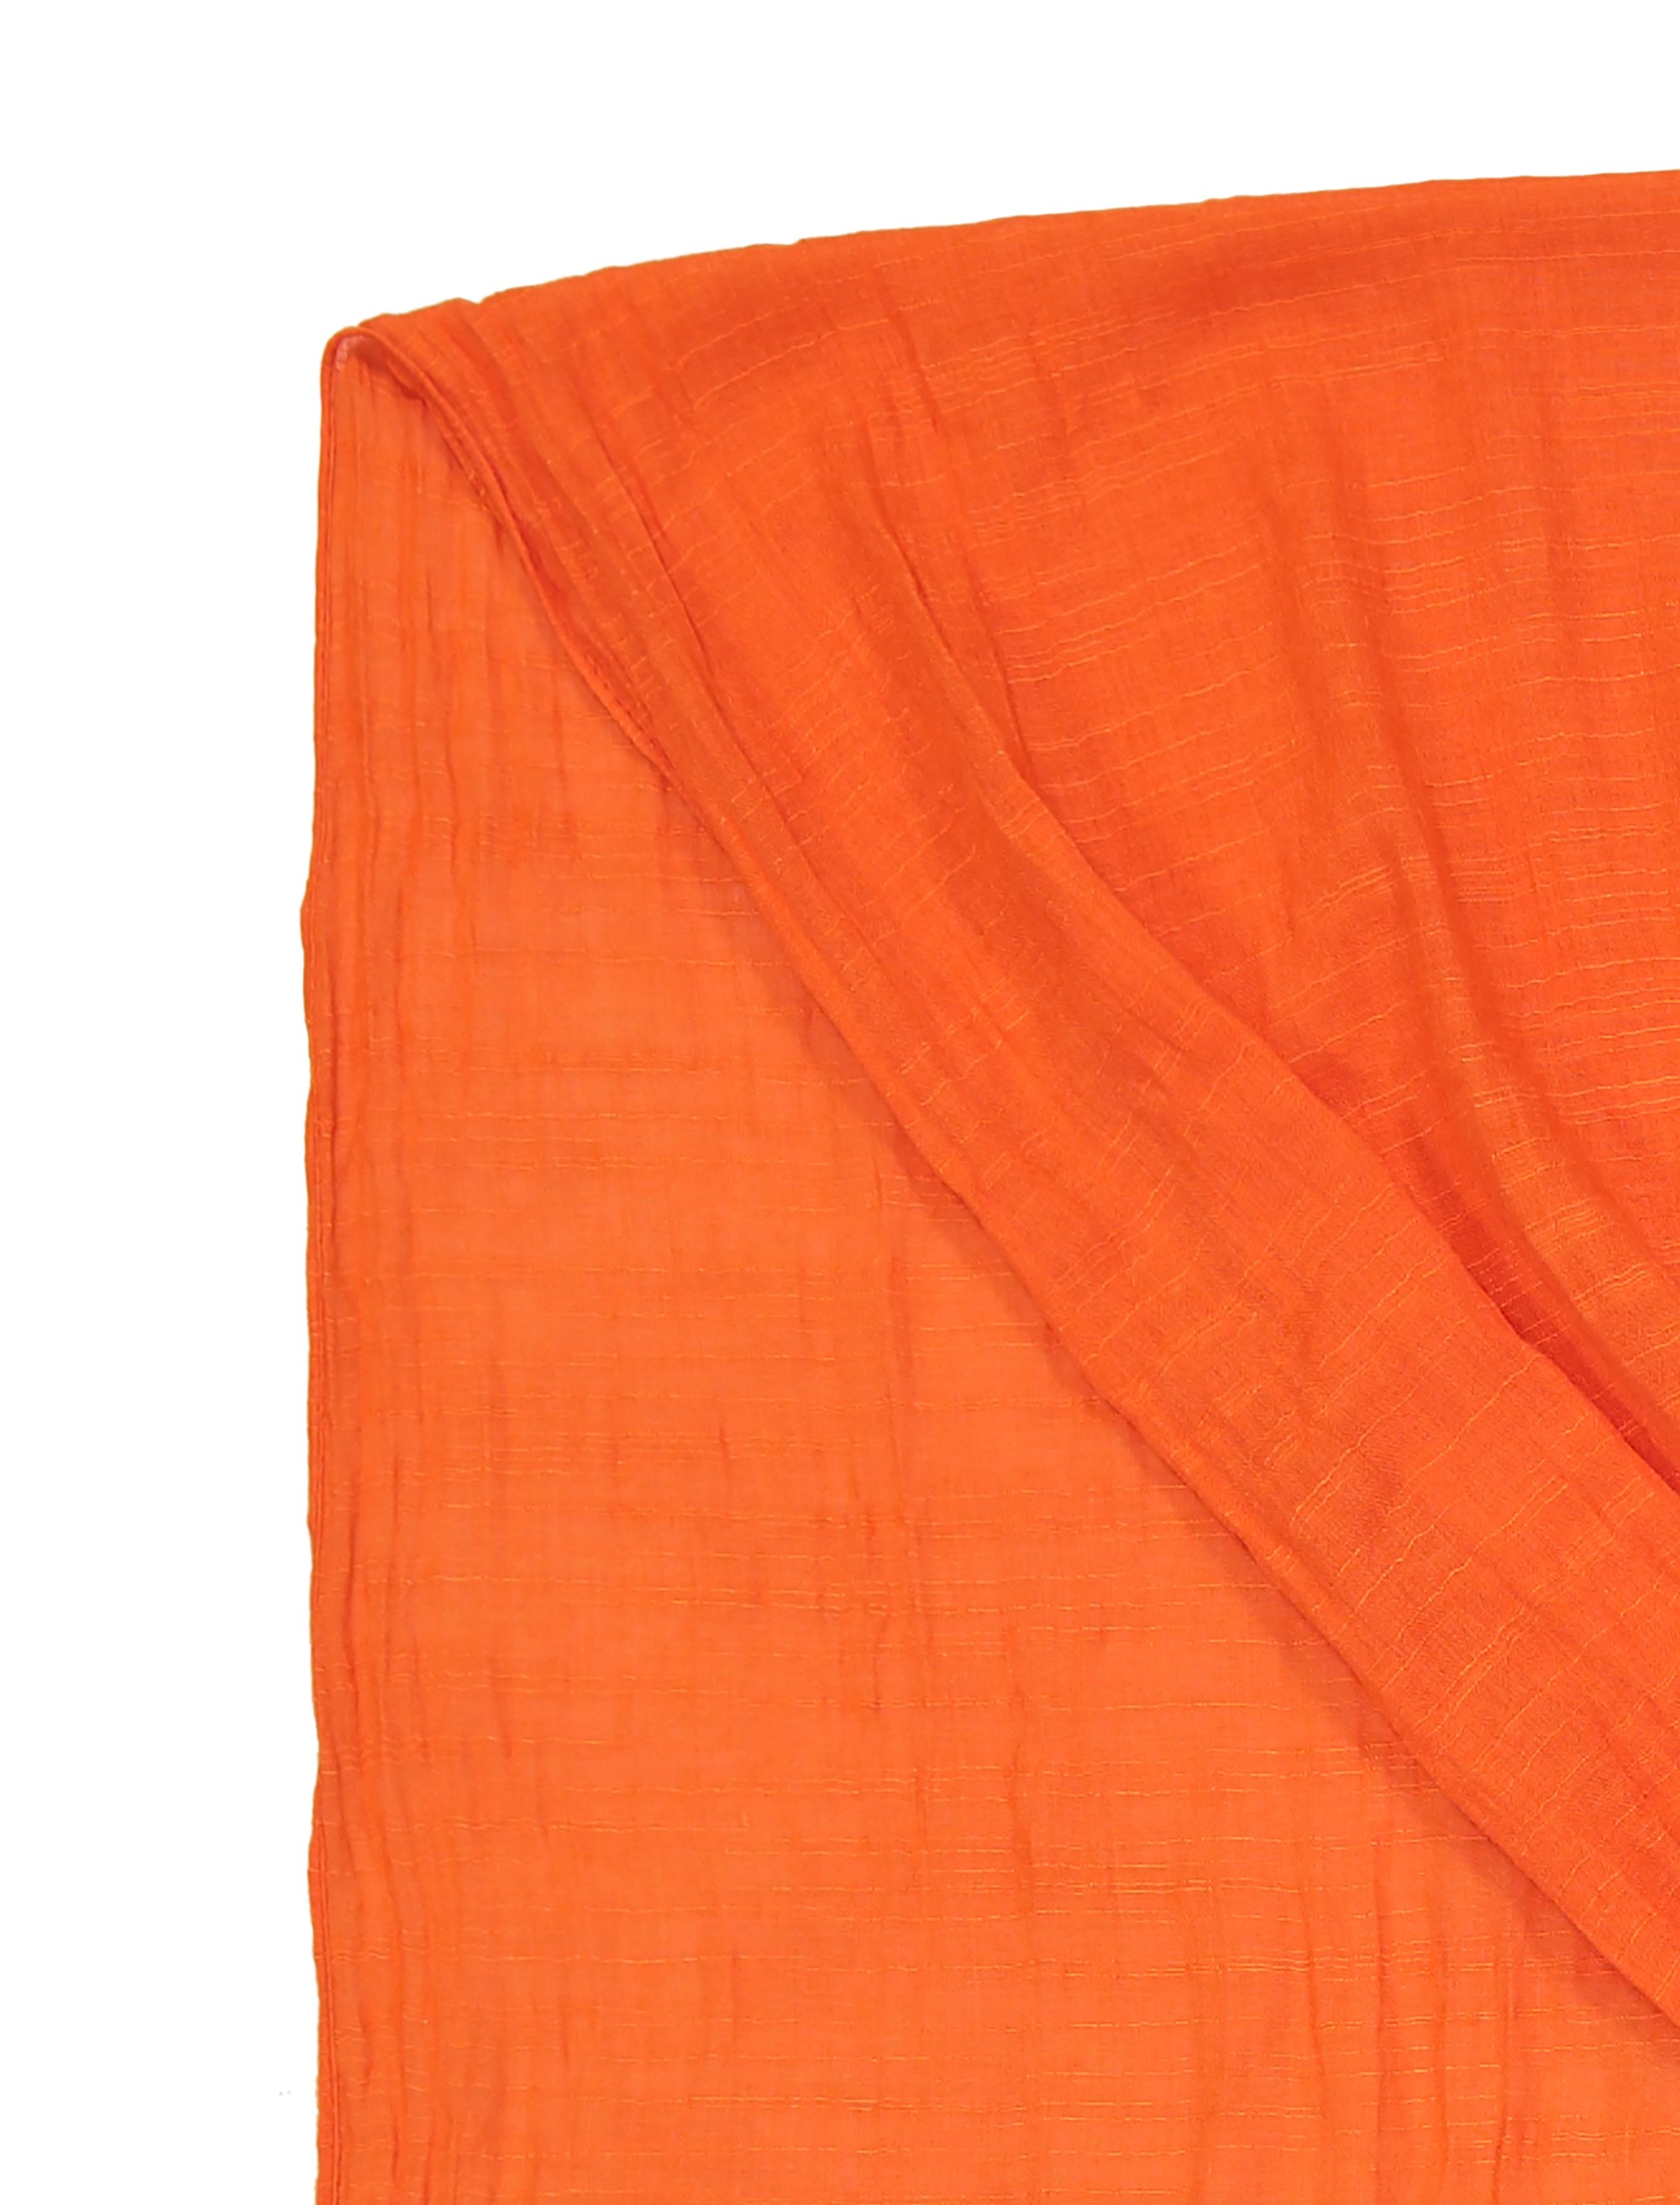 شال نخی ساده زنانه - هورشال تک سایز - نارنجي - 5